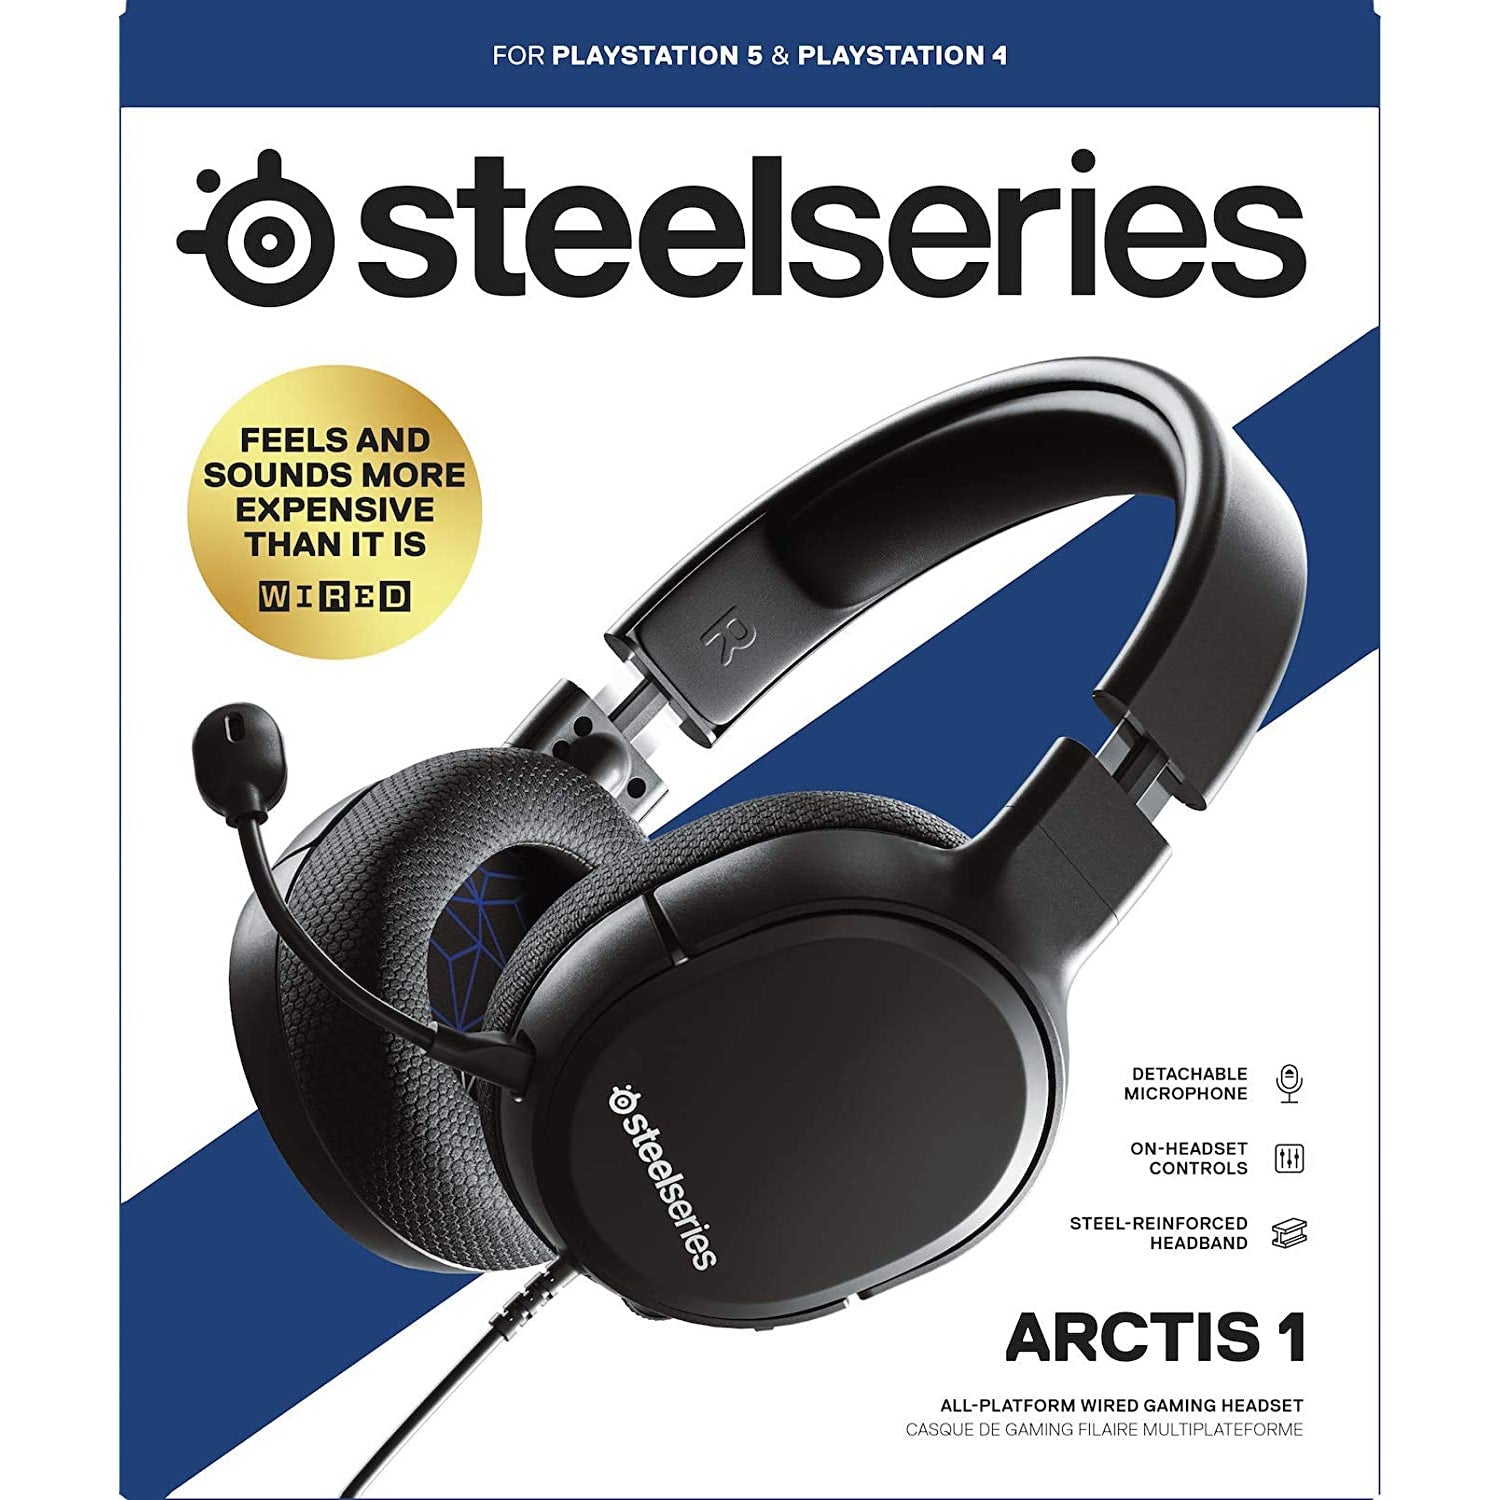 SteelSeries Arctis 1 For PlayStation - Black - Refurbished Good